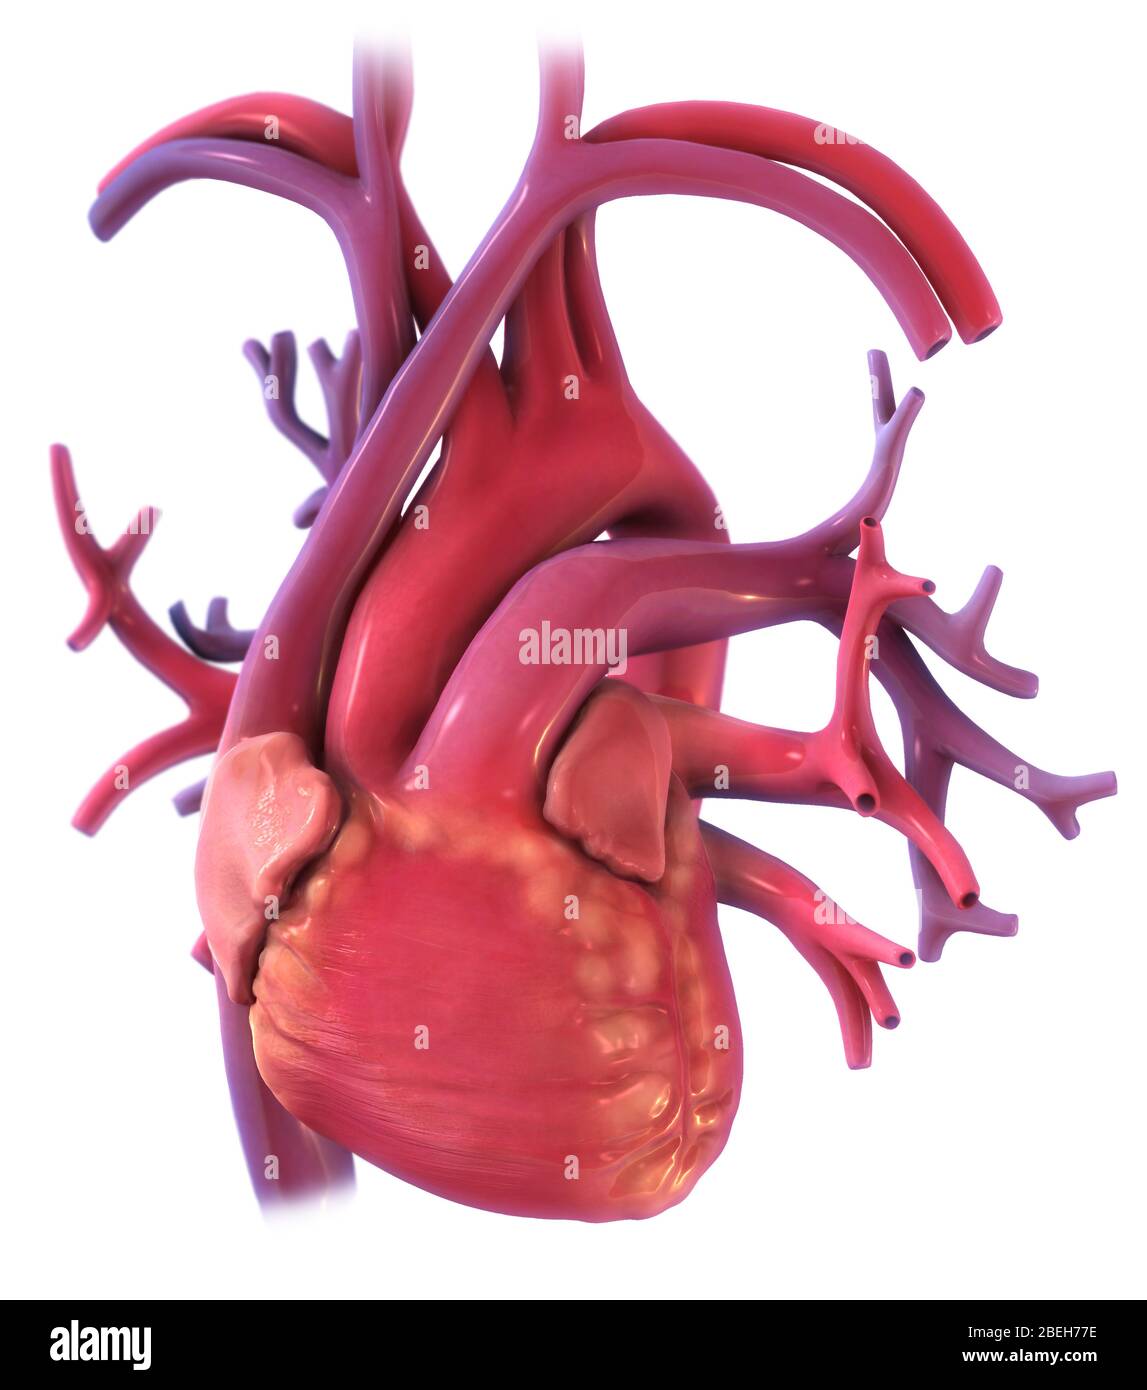 Eine Darstellung des Herzens, das durch die Lunge aus der anterioren Ansicht gesehen wird. Stockfoto